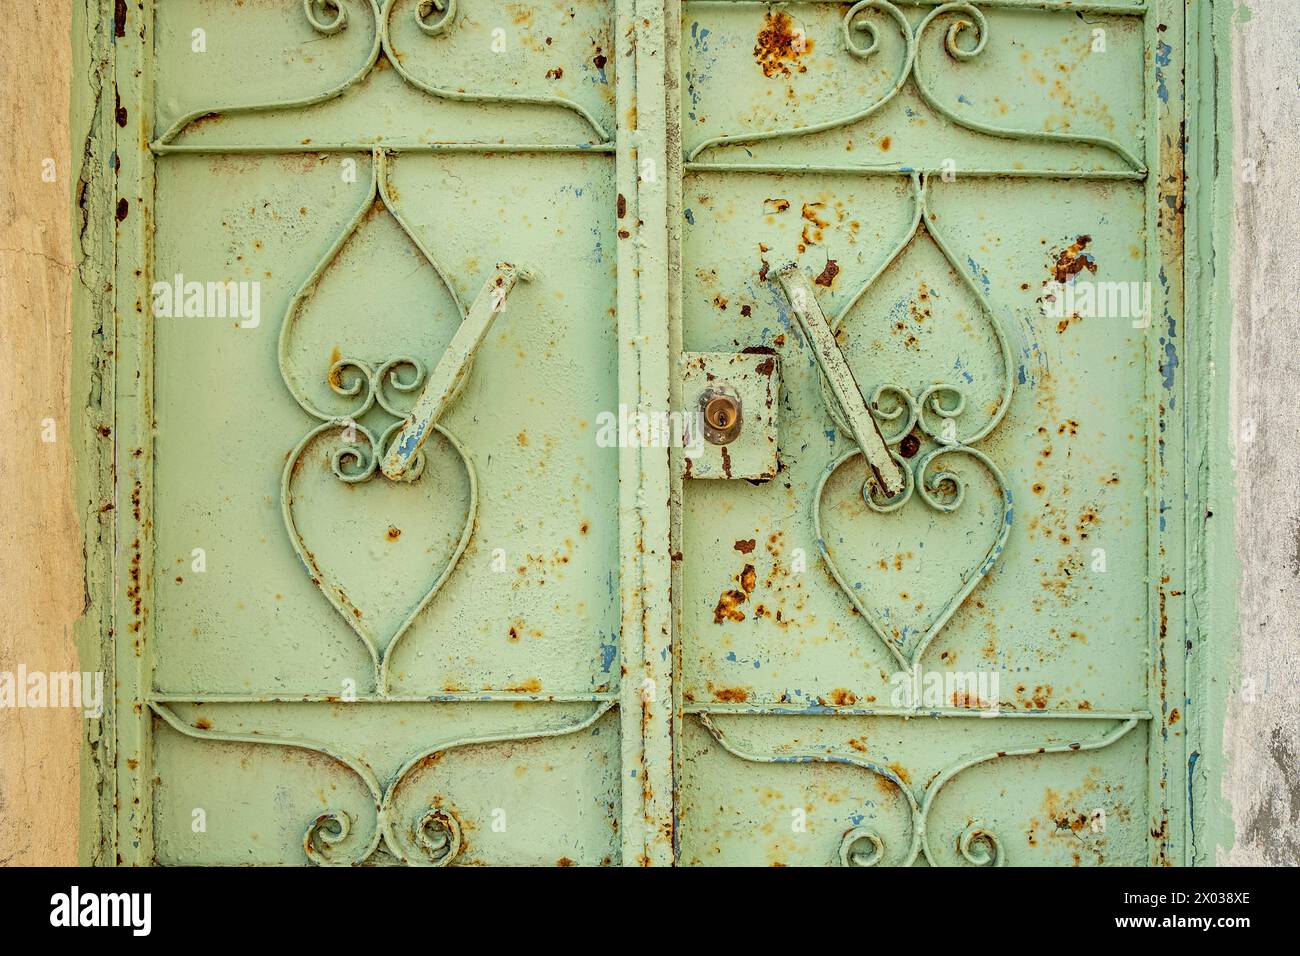 Une porte en métal vert altéré avec de la peinture écaillée à l'entrée d'une vieille maison arabe au moyen-Orient. Banque D'Images